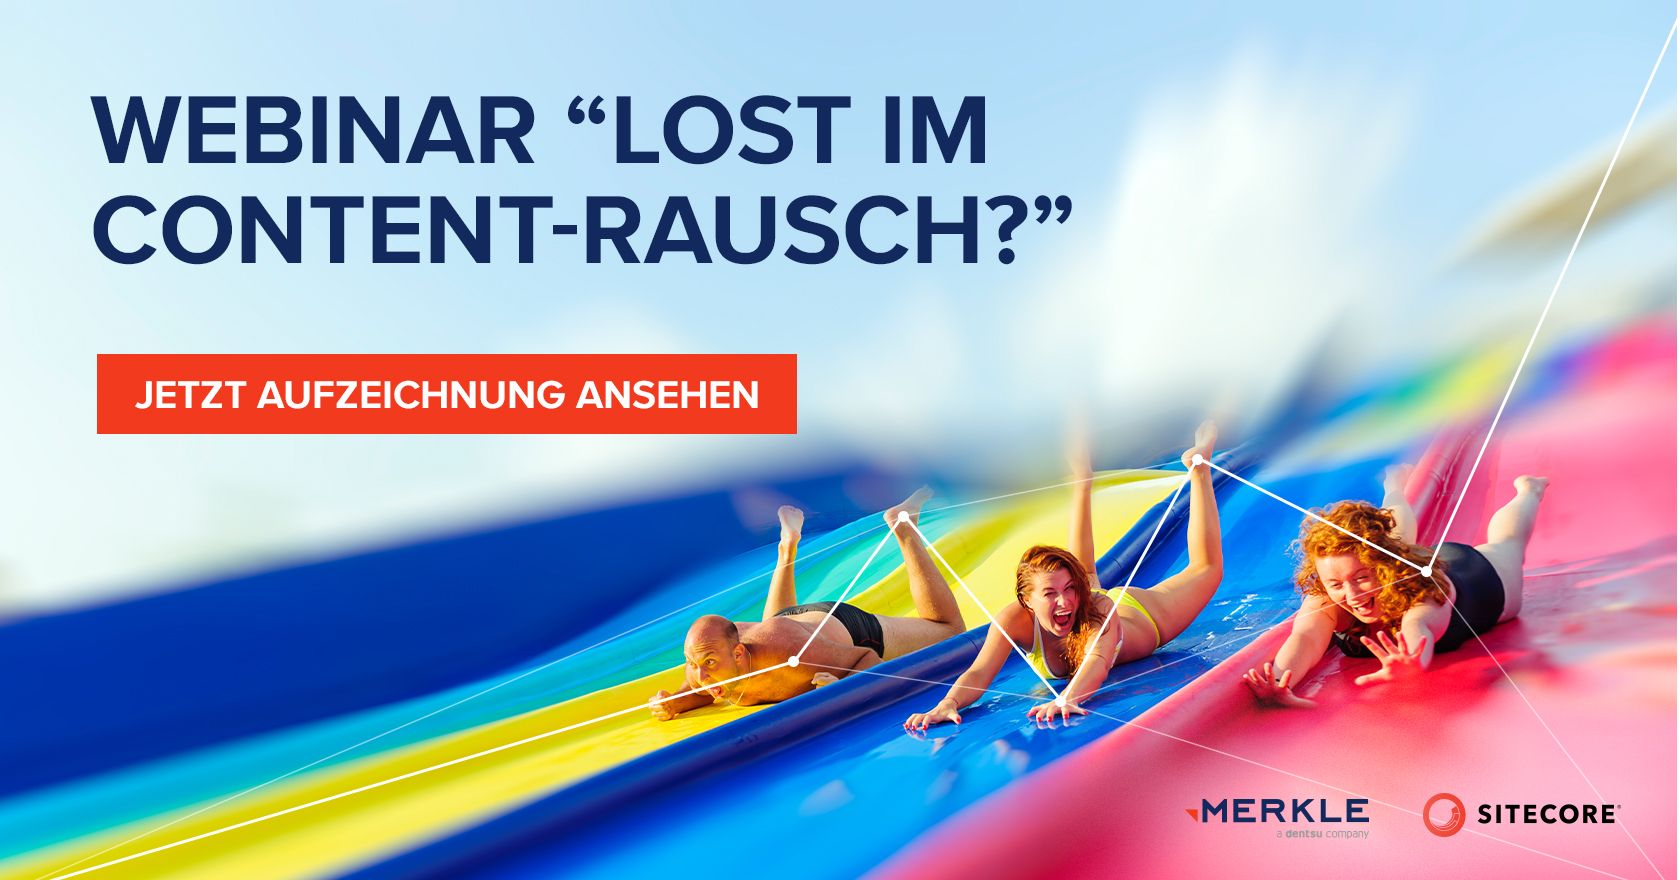 Lost im Content-Rausch?